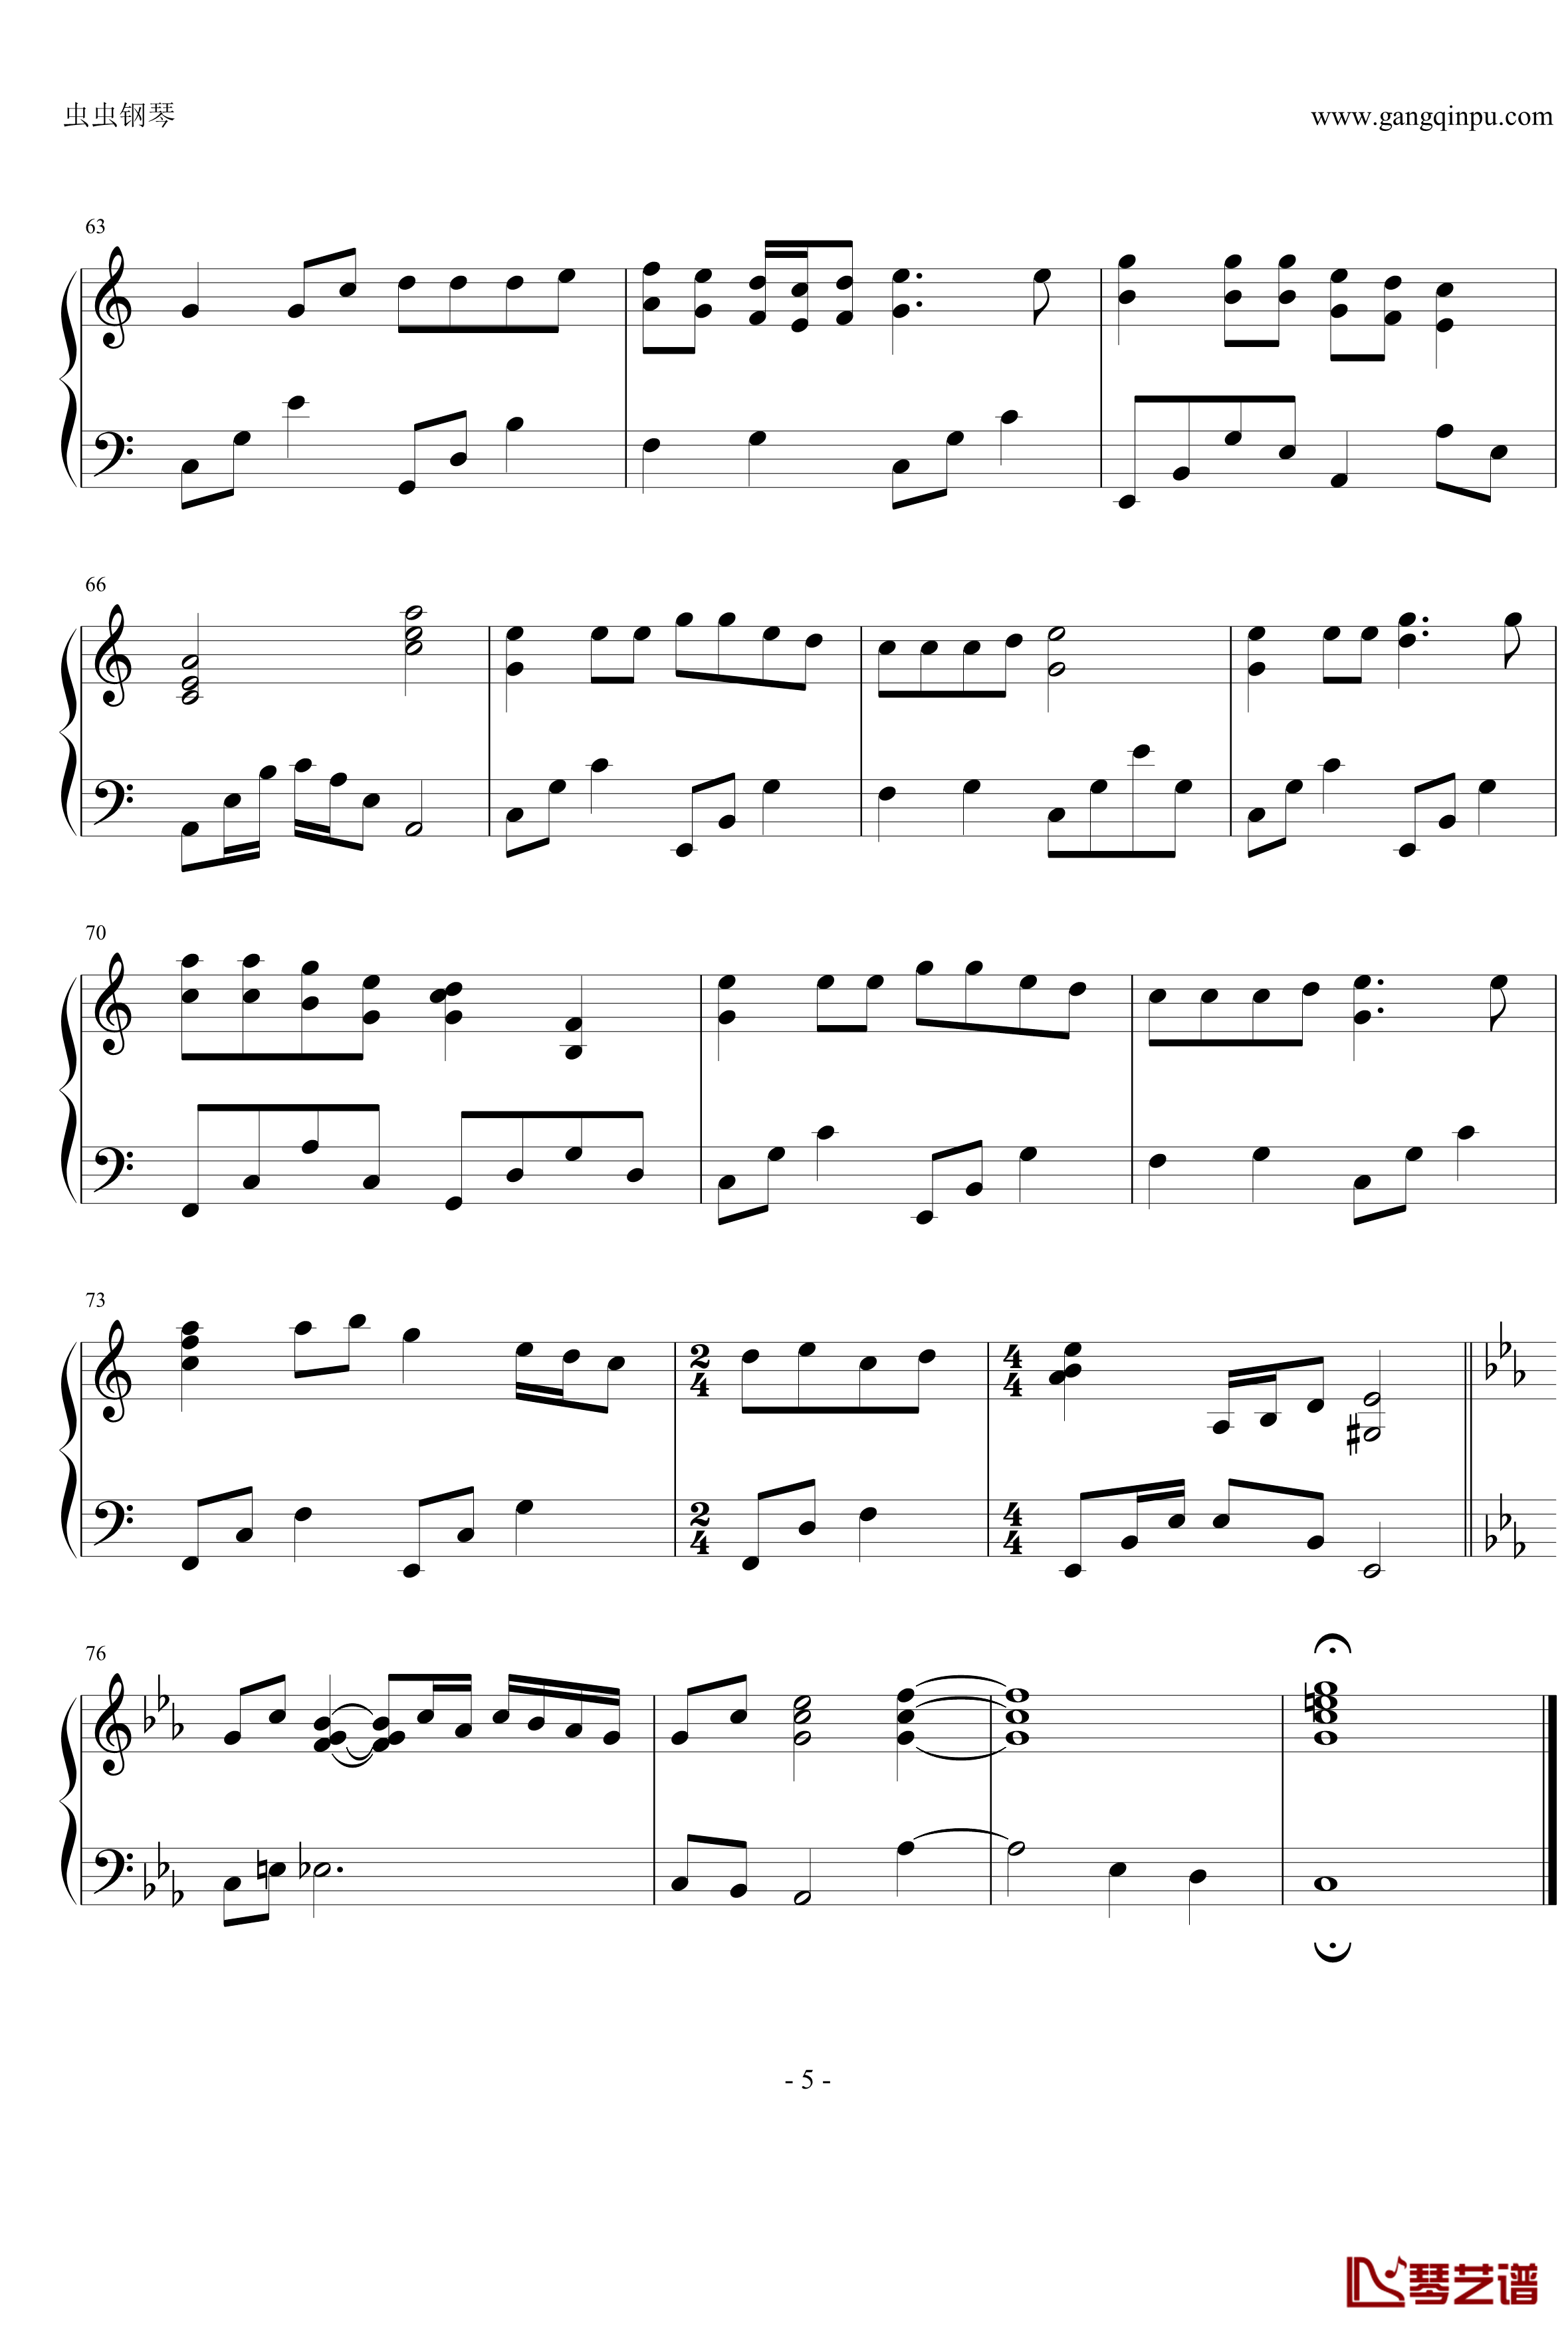 瑟鲁之歌钢琴谱-钢琴独奏版-宫崎吾朗5